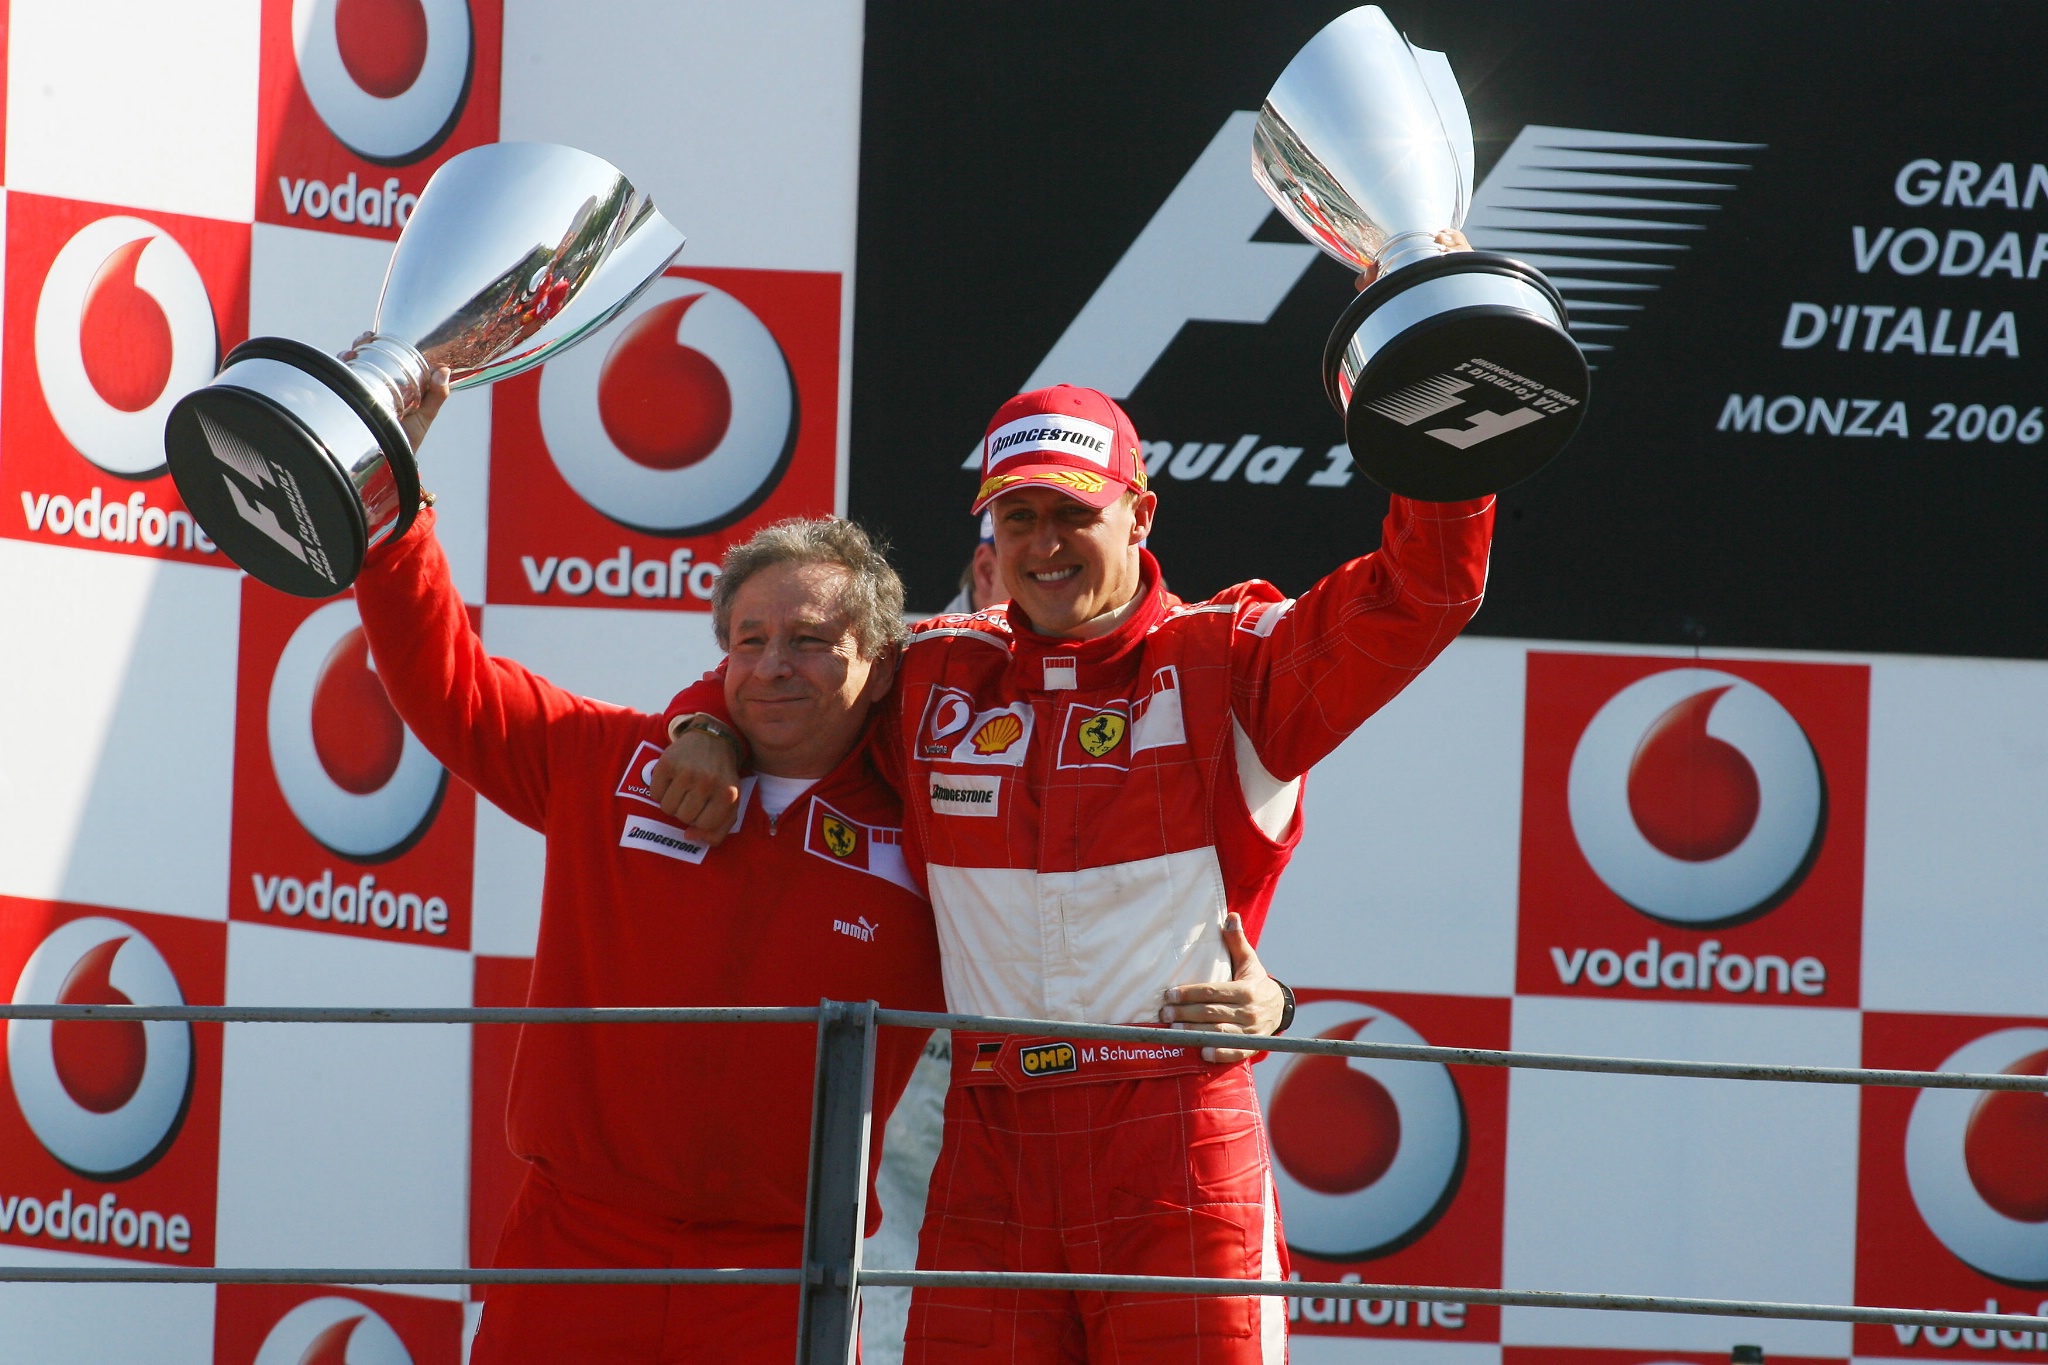  Monza, Italia, Michael Schumacher (GER), Scuderia Ferrari dan Jean Todt (FRA), Scuderia Ferrari, Ketua Tim, Umum